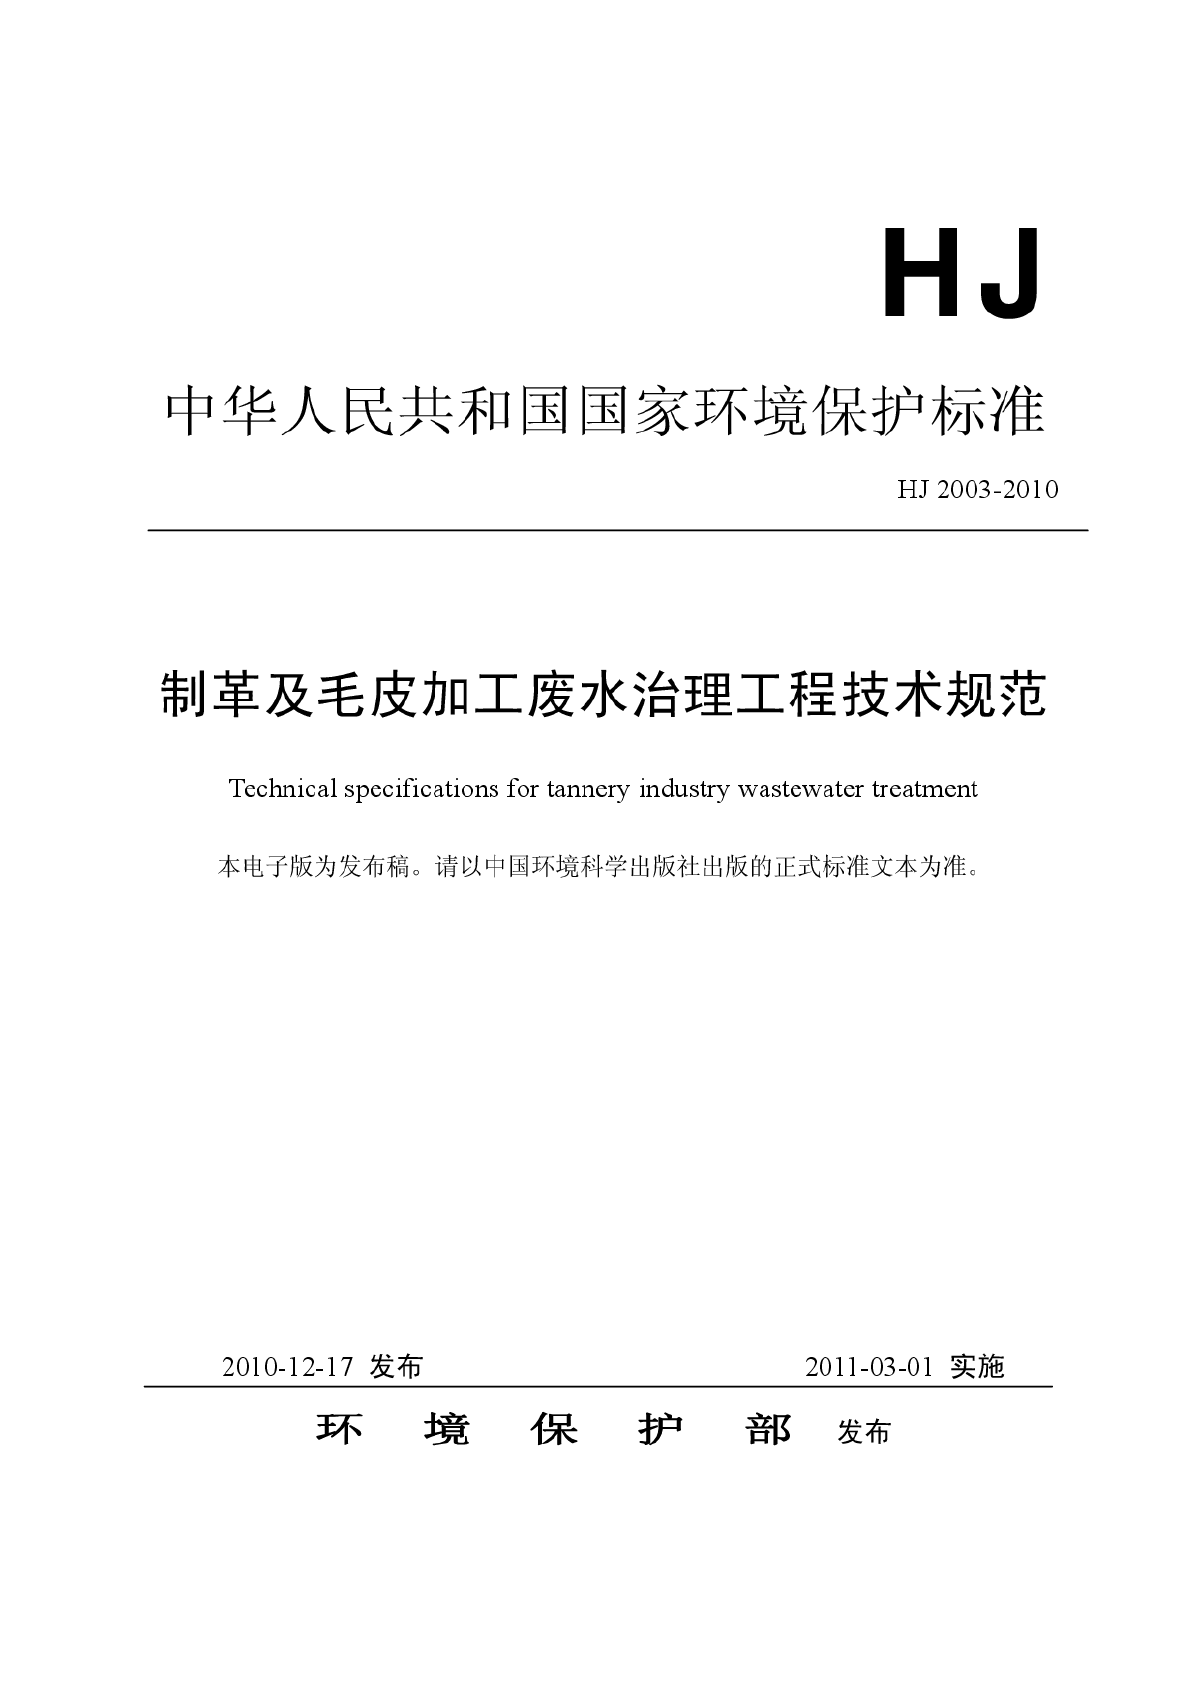 制革及毛皮加工废水治理工程技术规范（HJ+2003-2010）.pdf